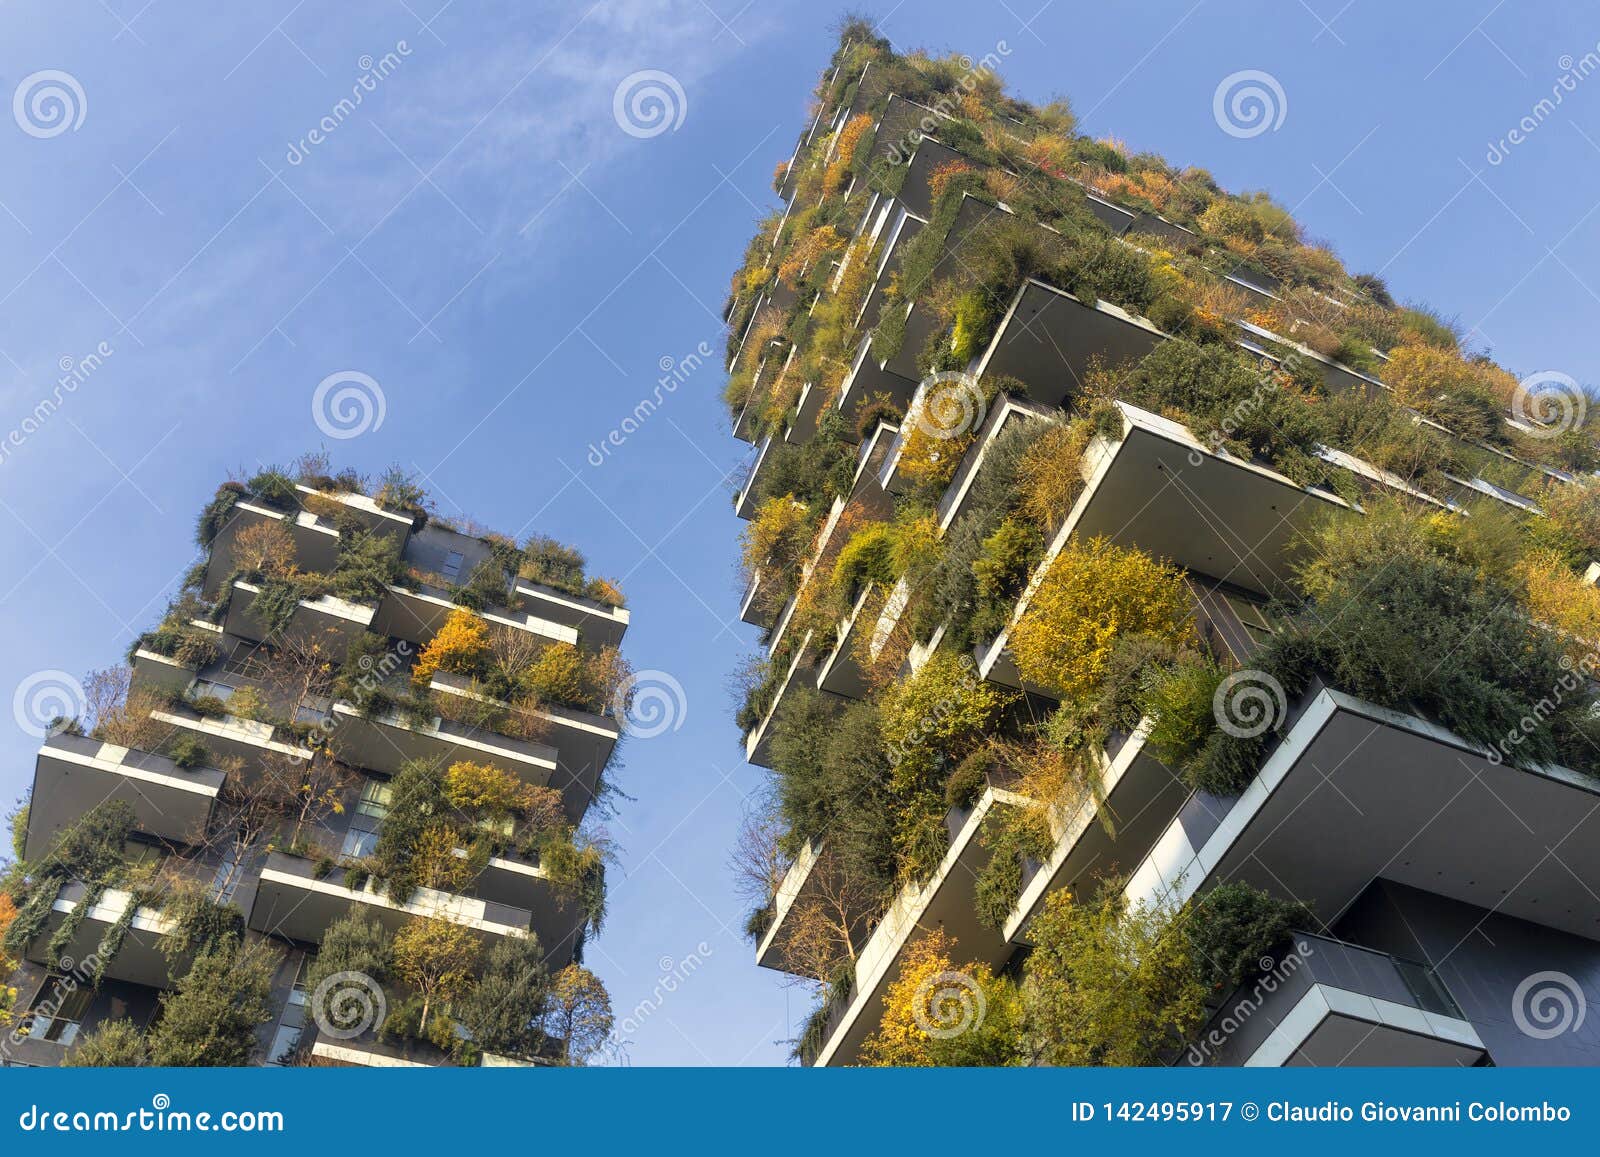 bosco verticale, modern buildings in milan